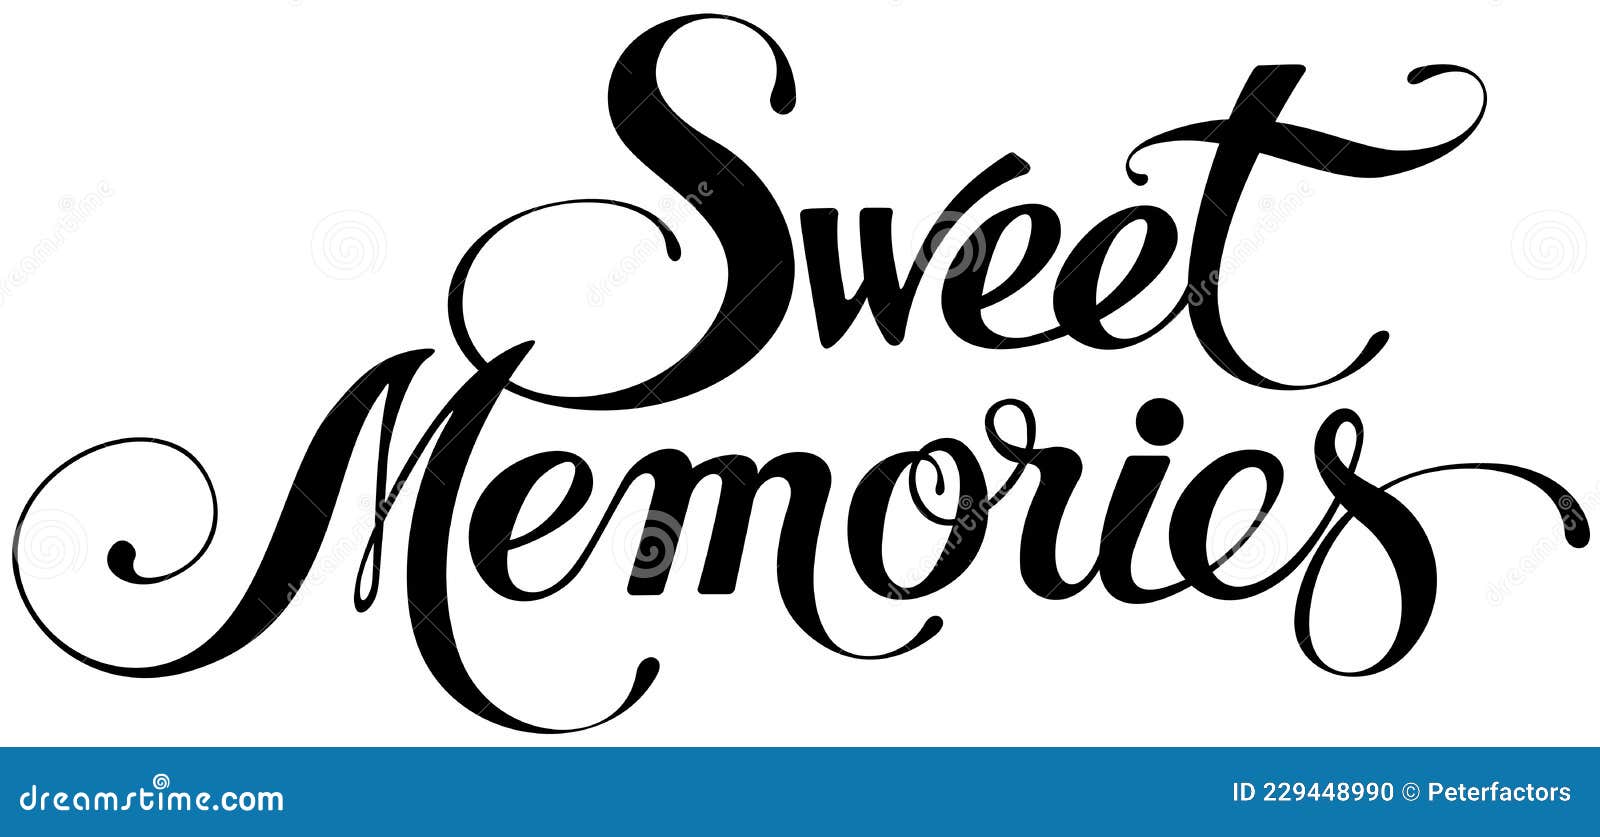 Sweet Memories - Custom Calligraphy Text Stock Vector ...